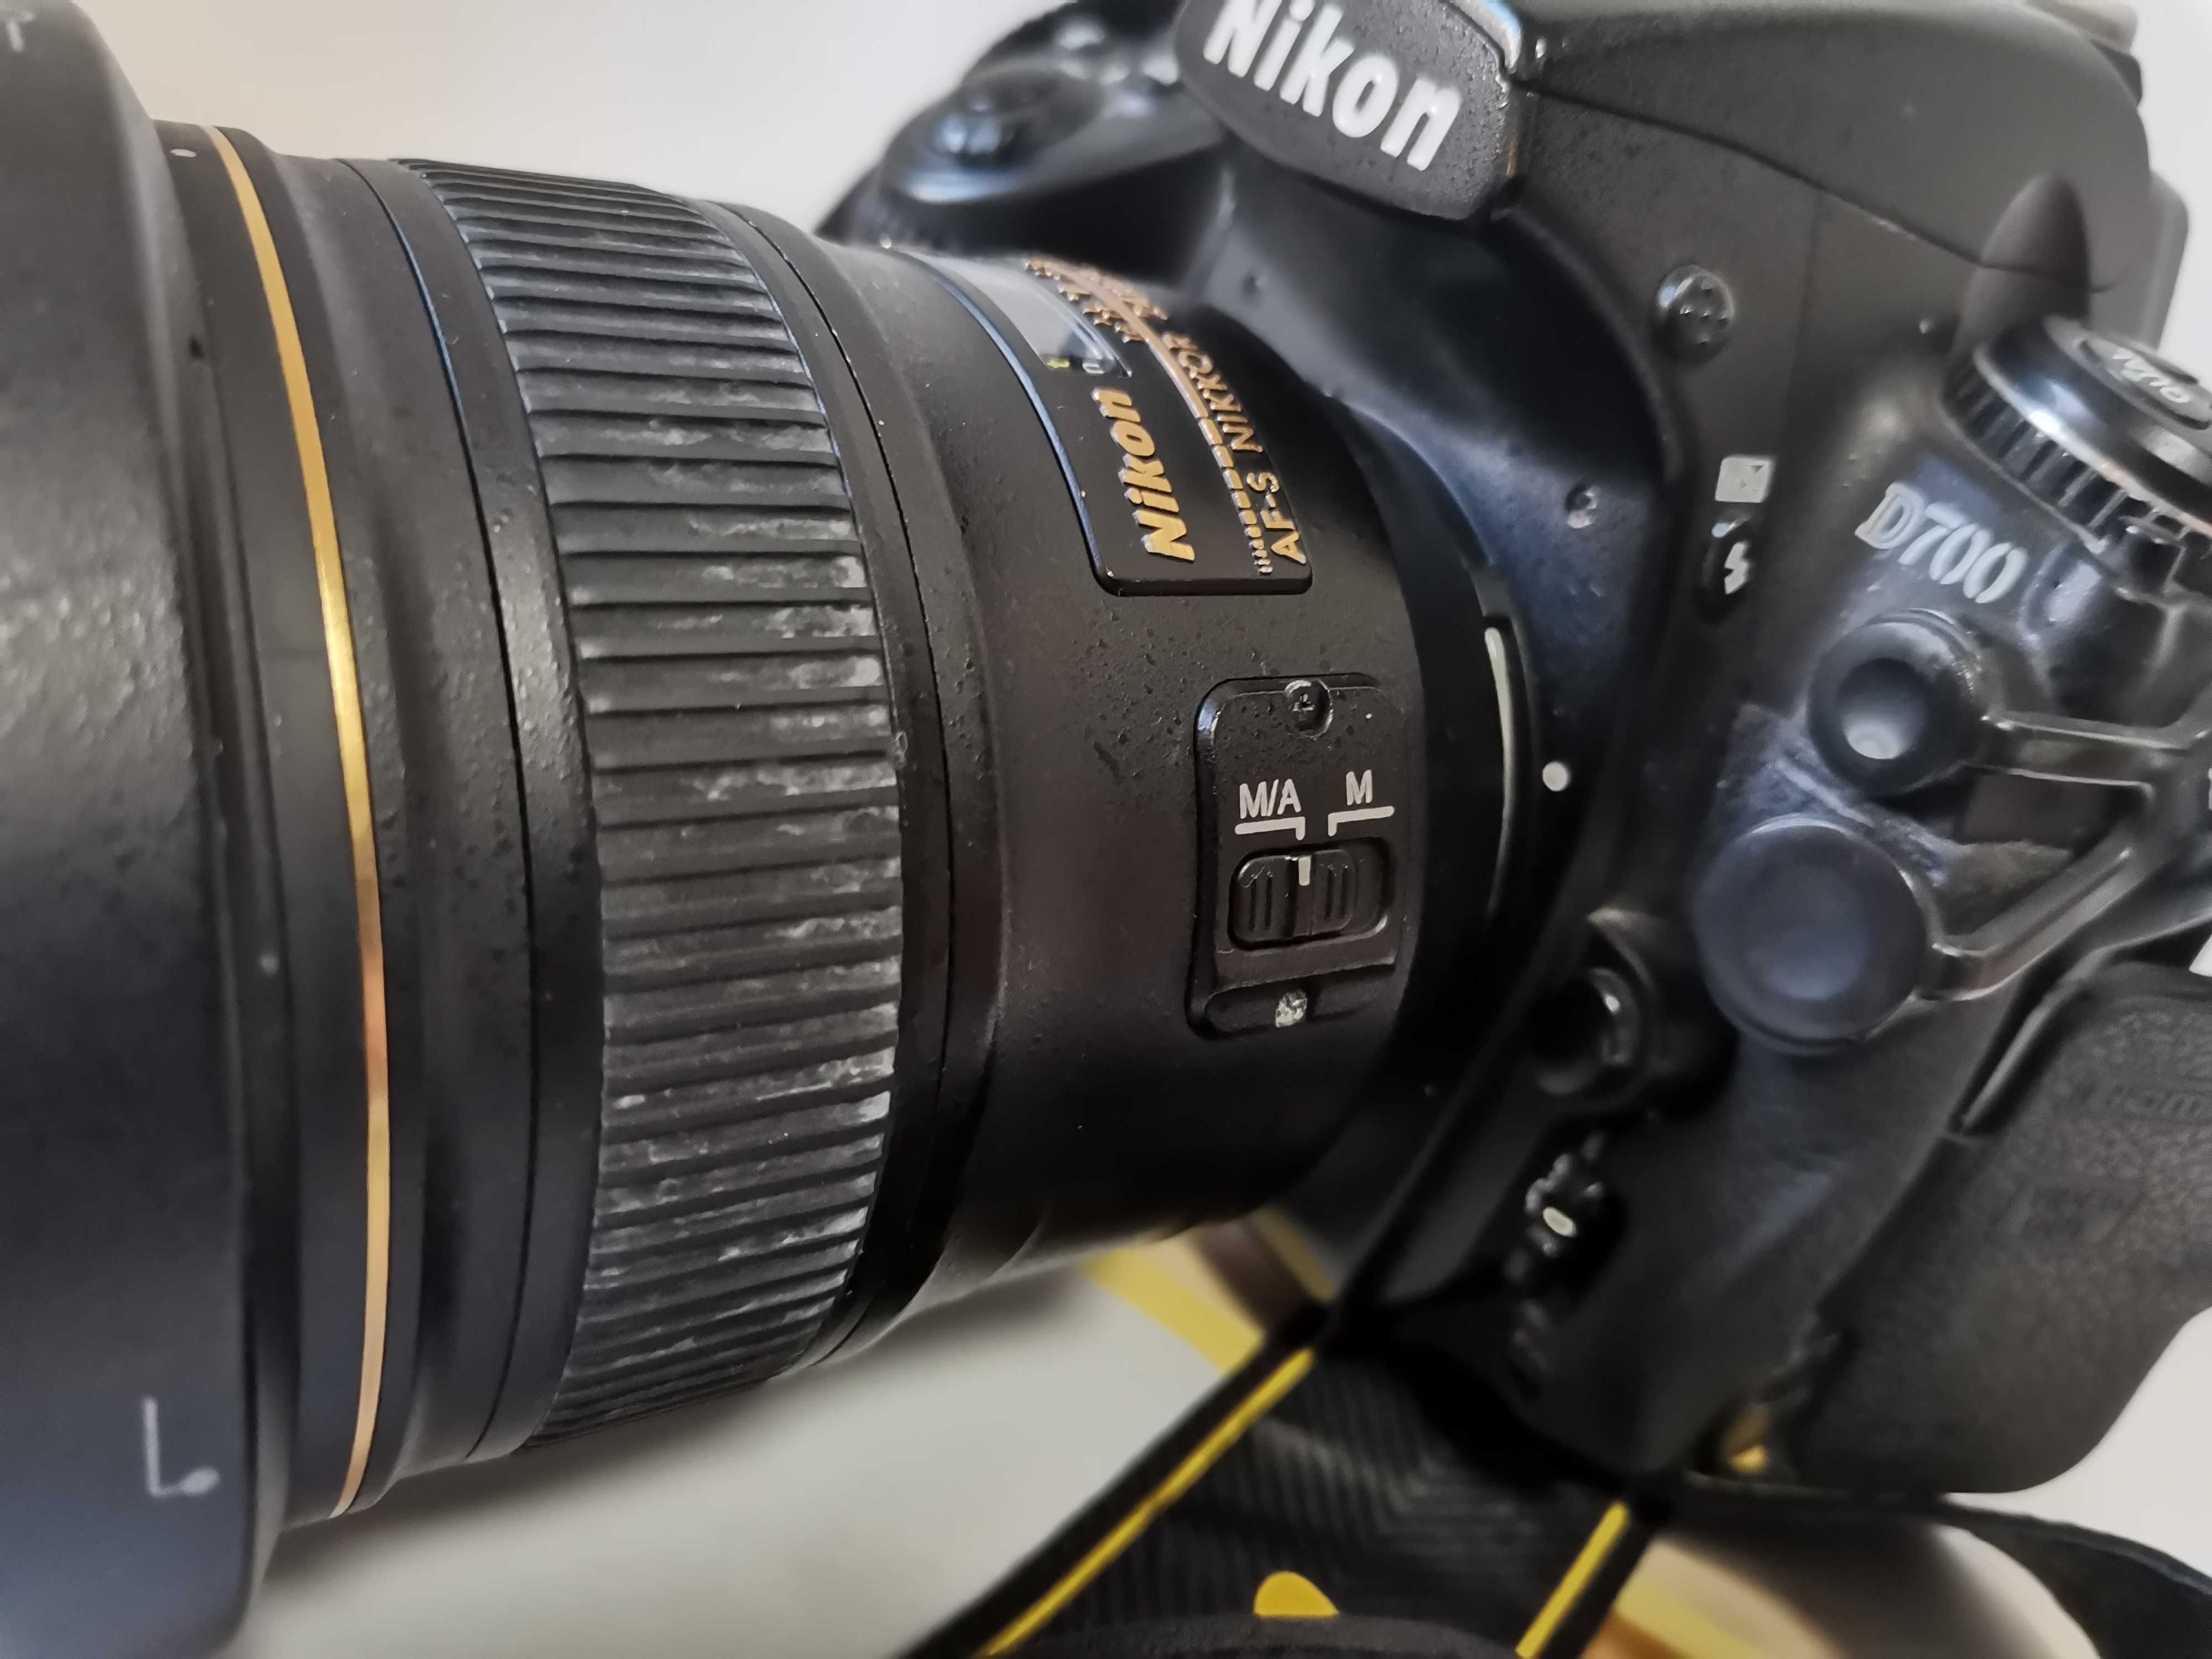 Obiektyw Nikon F AF-S NIKKOR 24mm f/1.4G ED+ Nikon D700 Gratis!